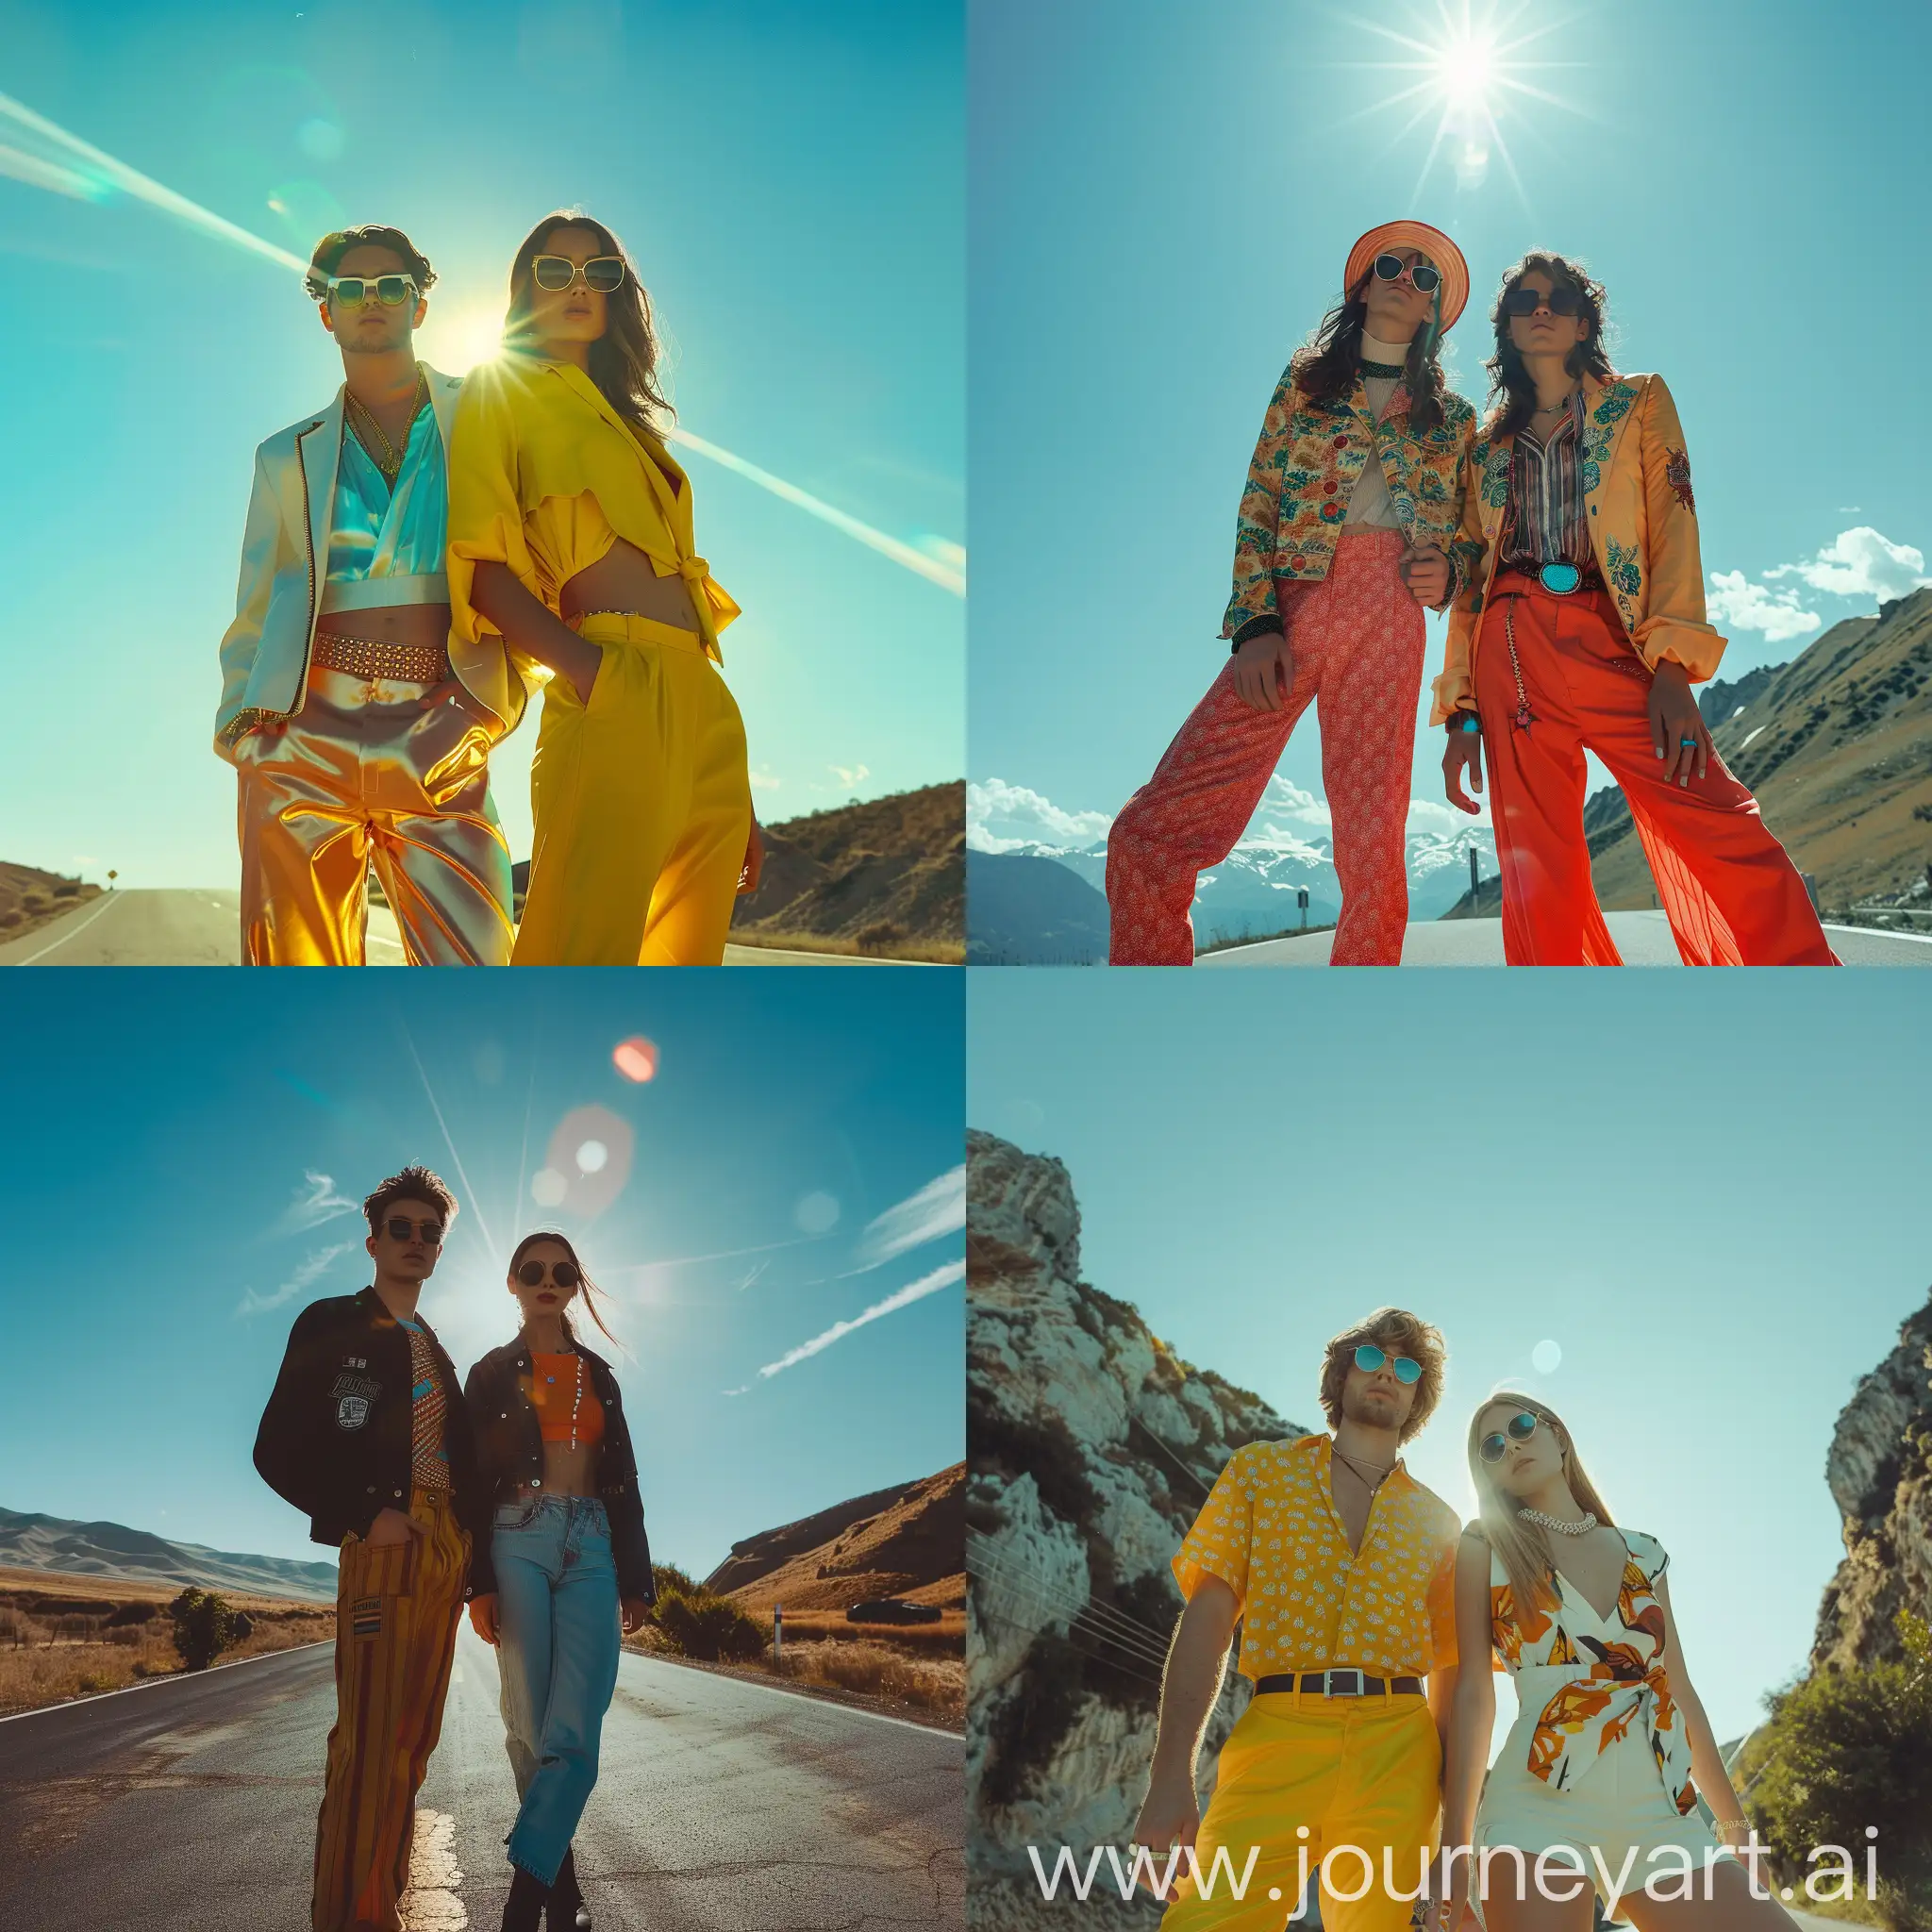 молодые фотомодели мужчина и женщина в яркой одежде позируют на фоне голубого неба и улыбаются. фон горная дорога, солнечный день. movie flares, 4k, realistic photo